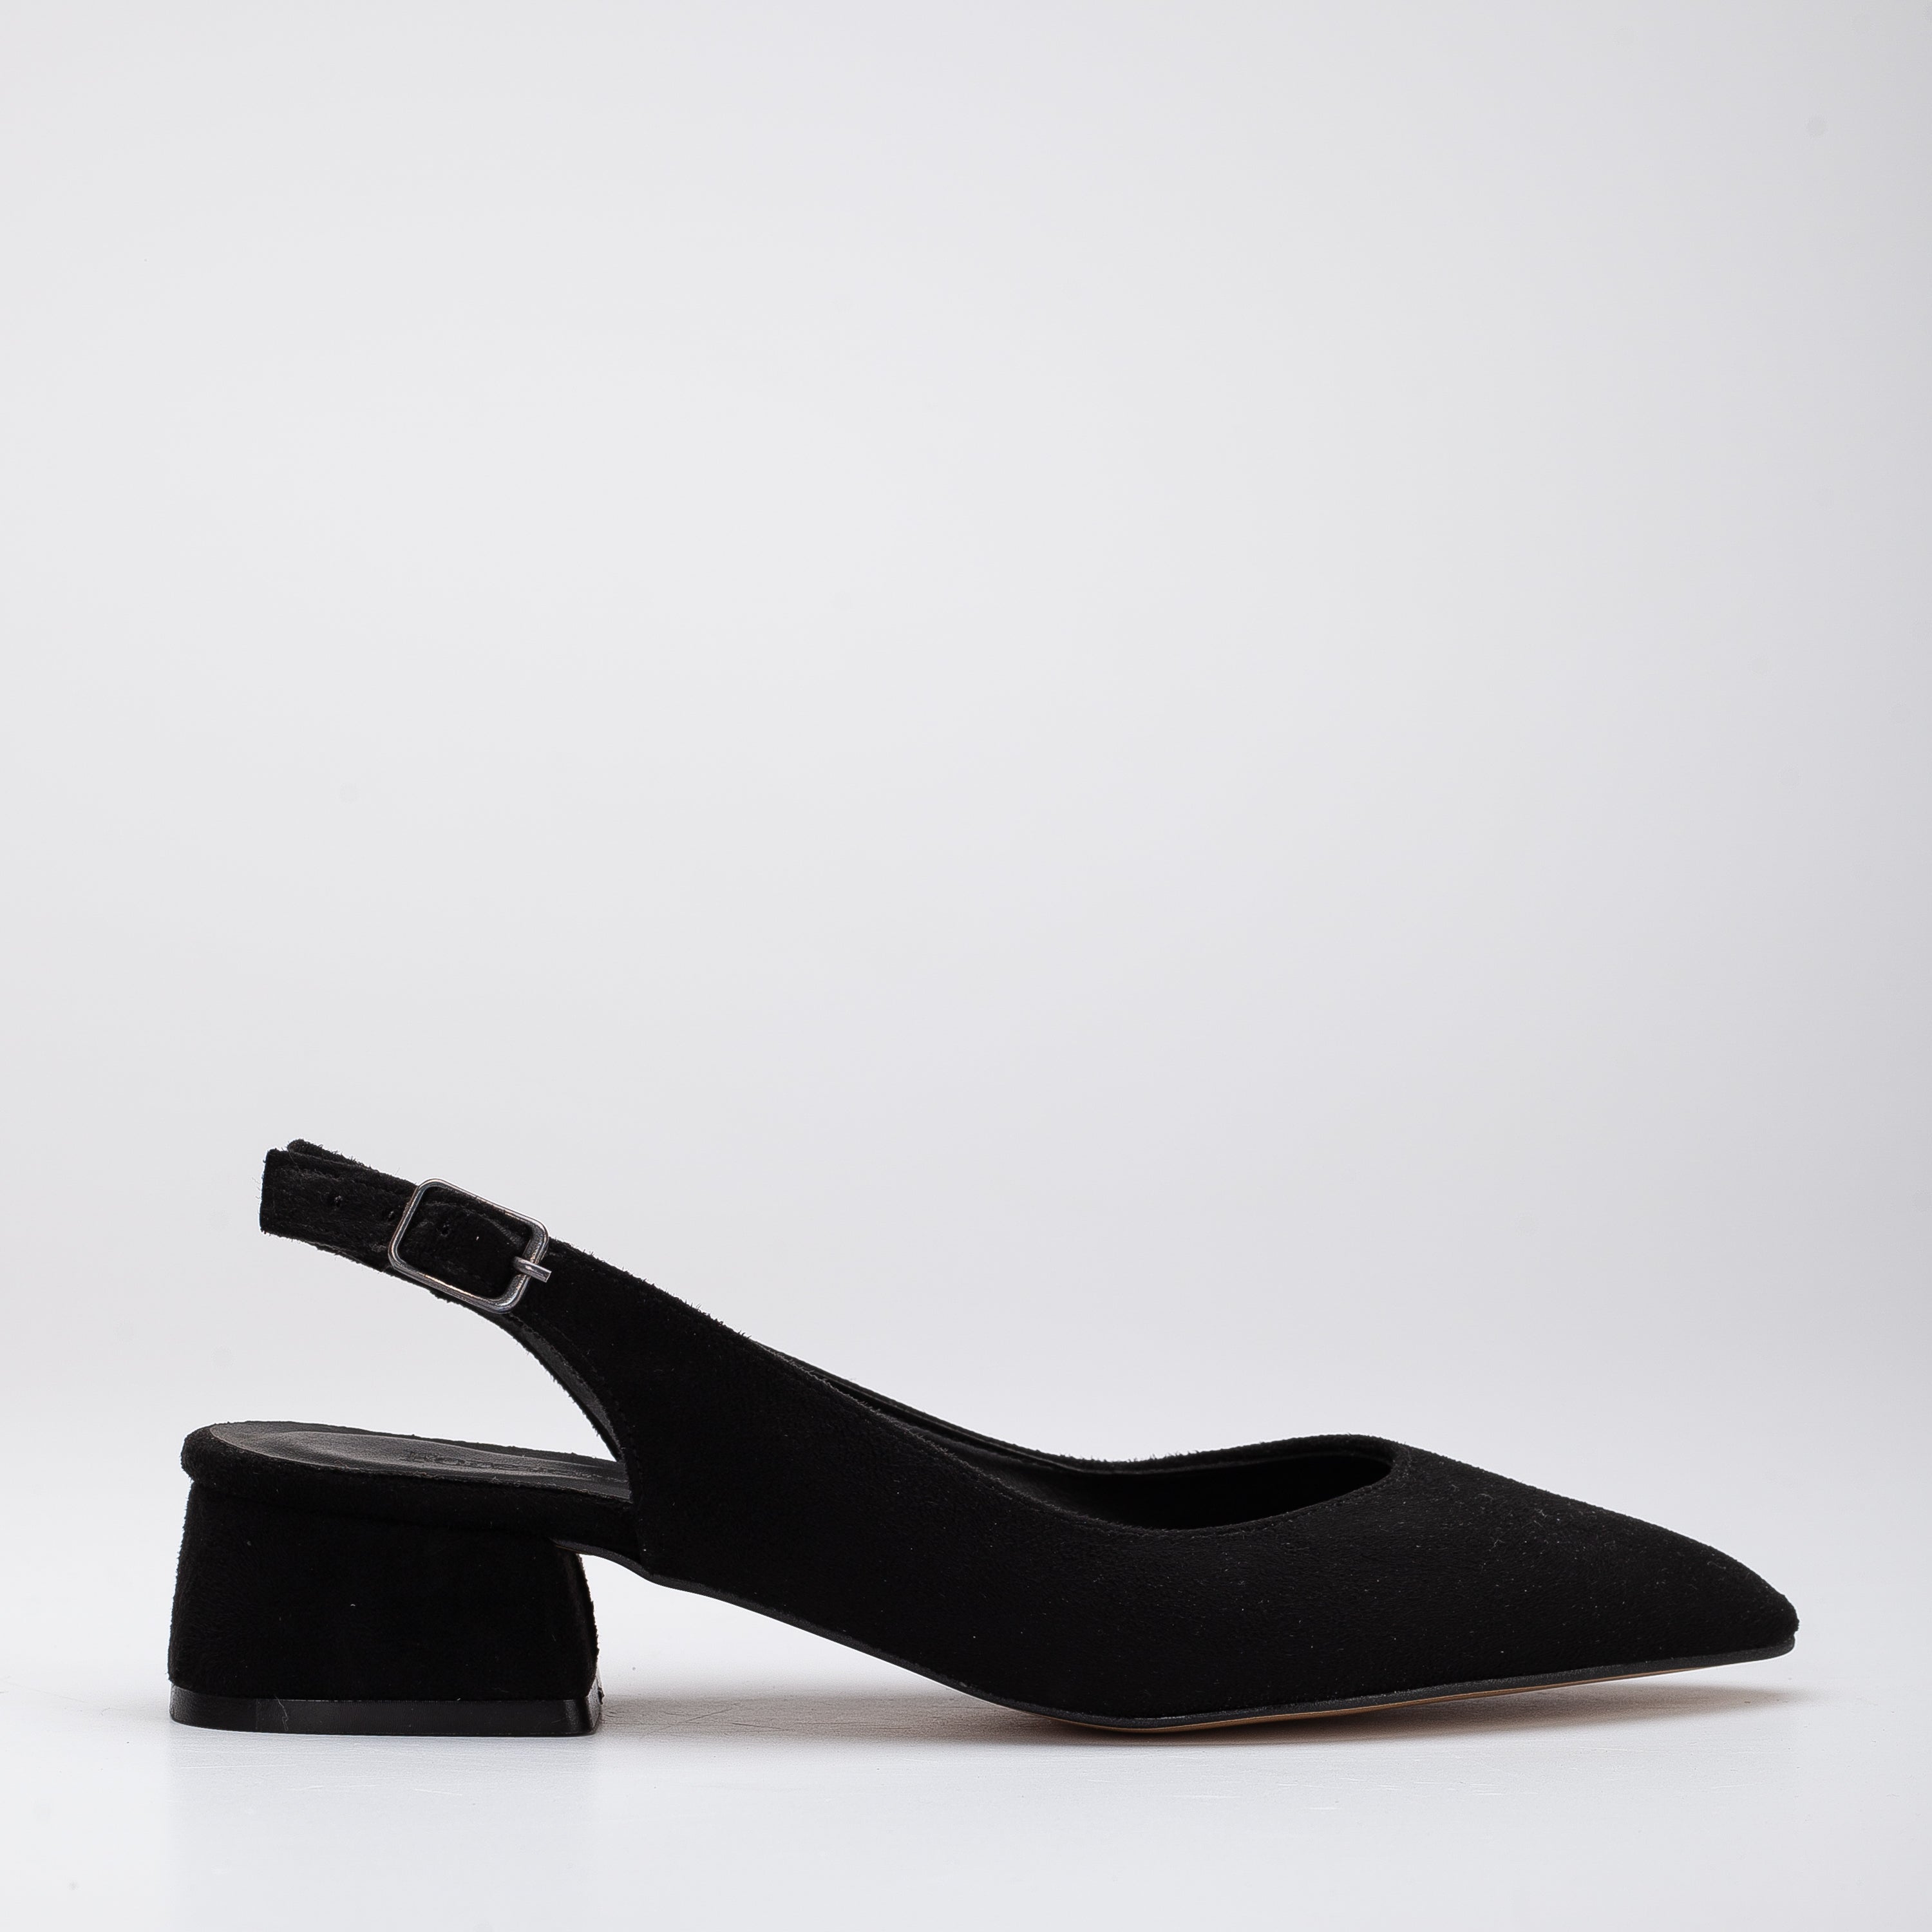 Black Suede Shoes, Black Suede Heels, Black Suede Flats